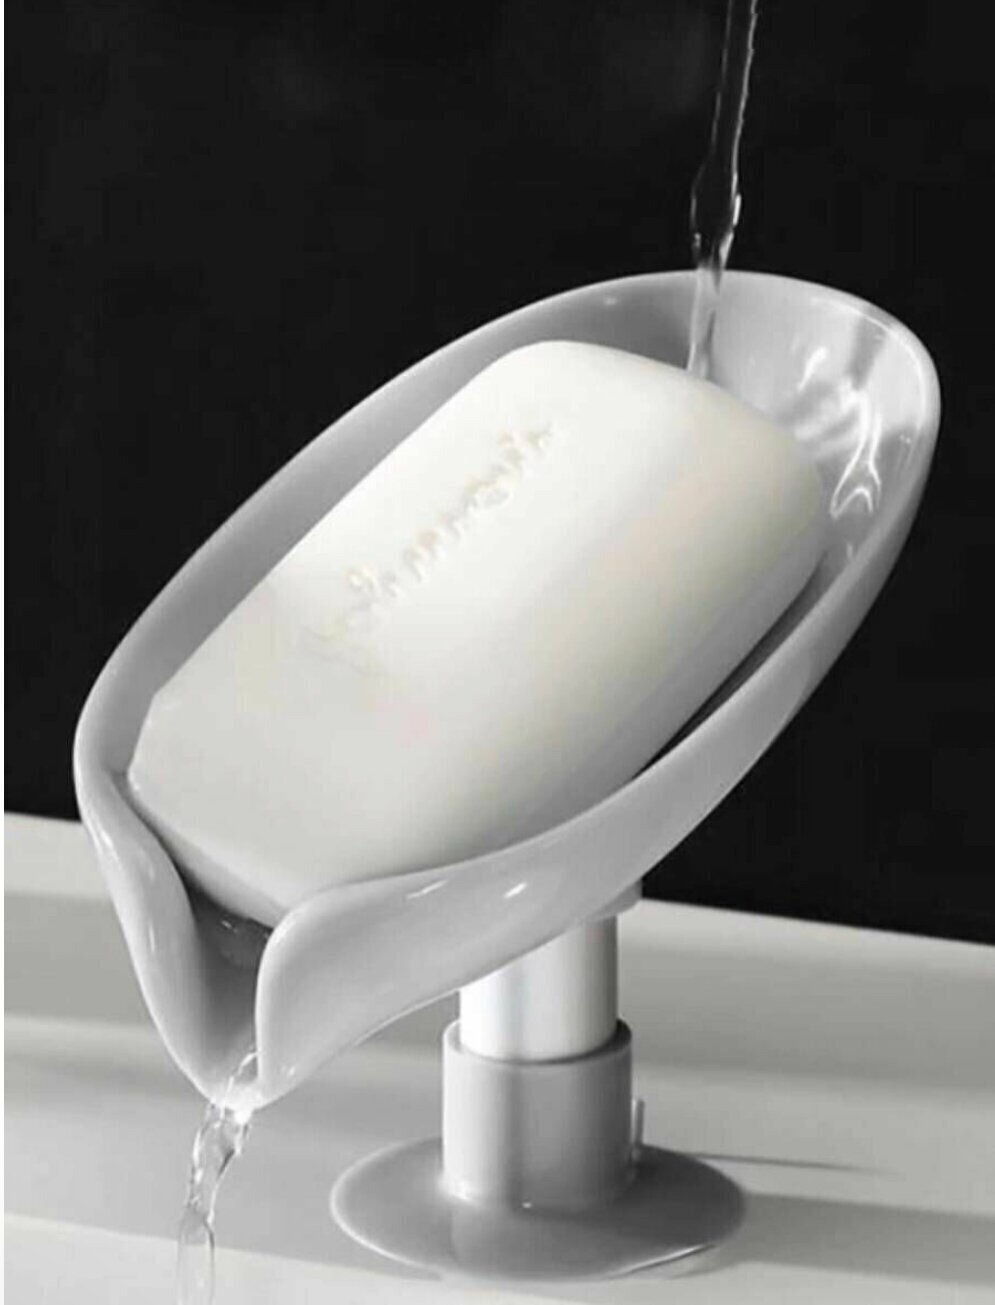 Мыльница для ванной кухни на ножке со сливом лепесток держатель мыла для кухни для губки, цвет серый